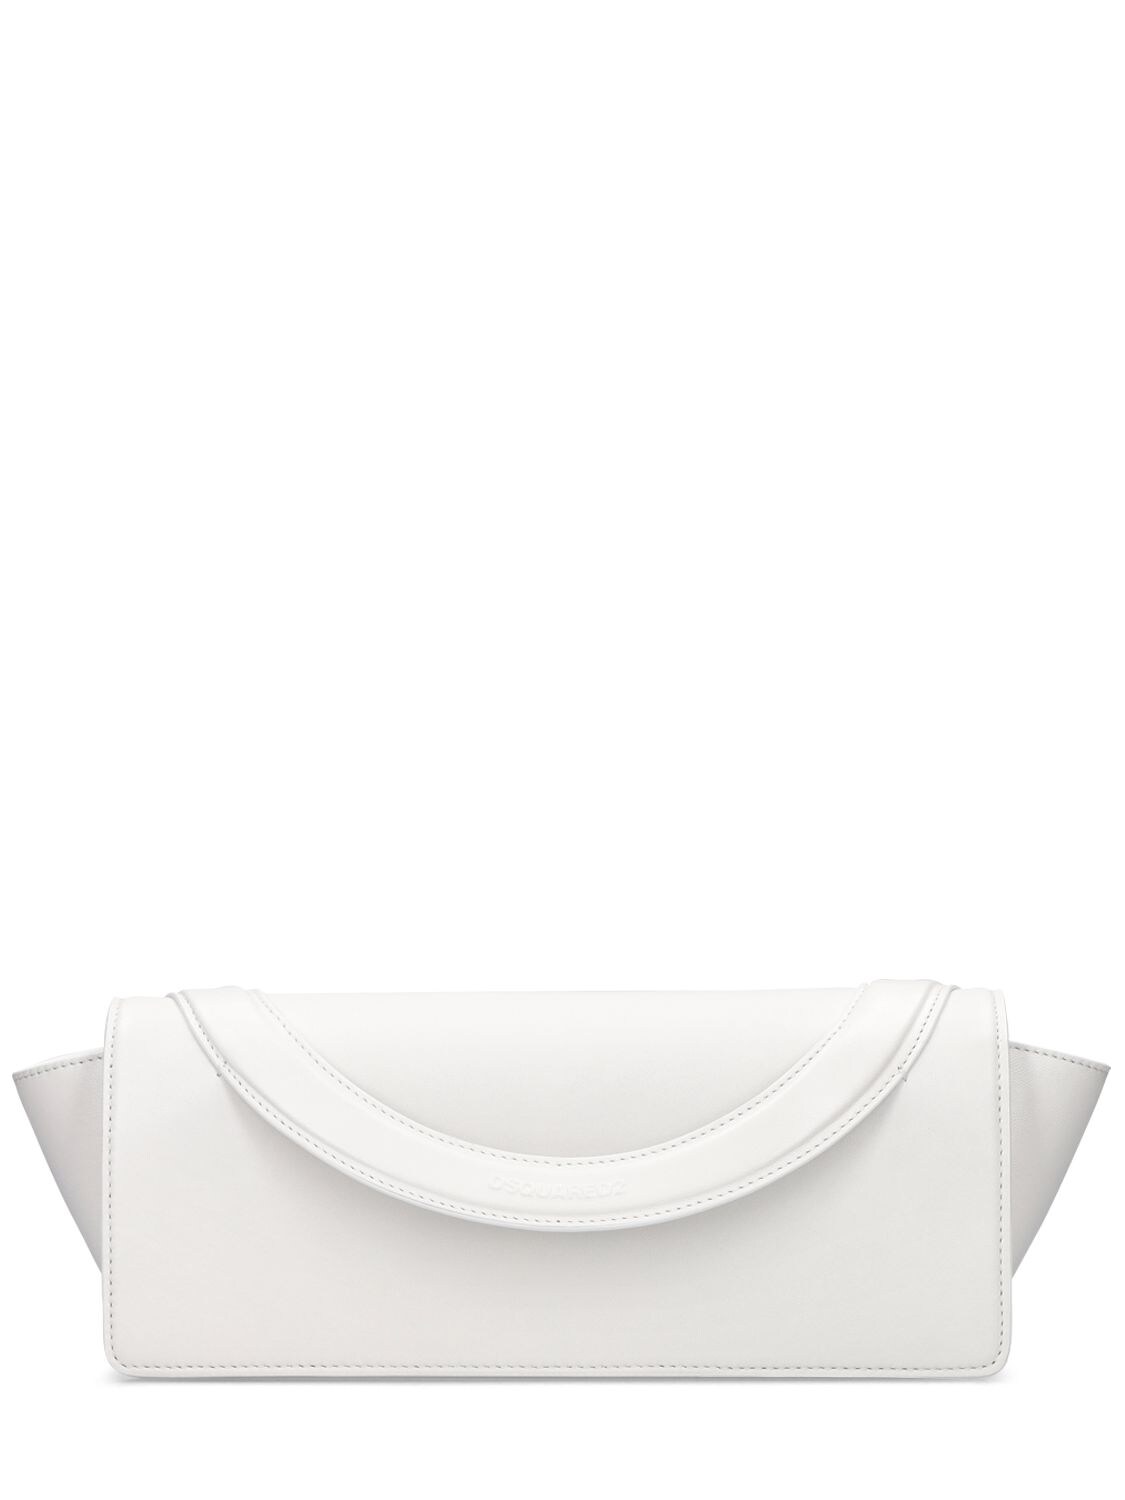 Dsquared2 Cosmopolitan Handbag In White